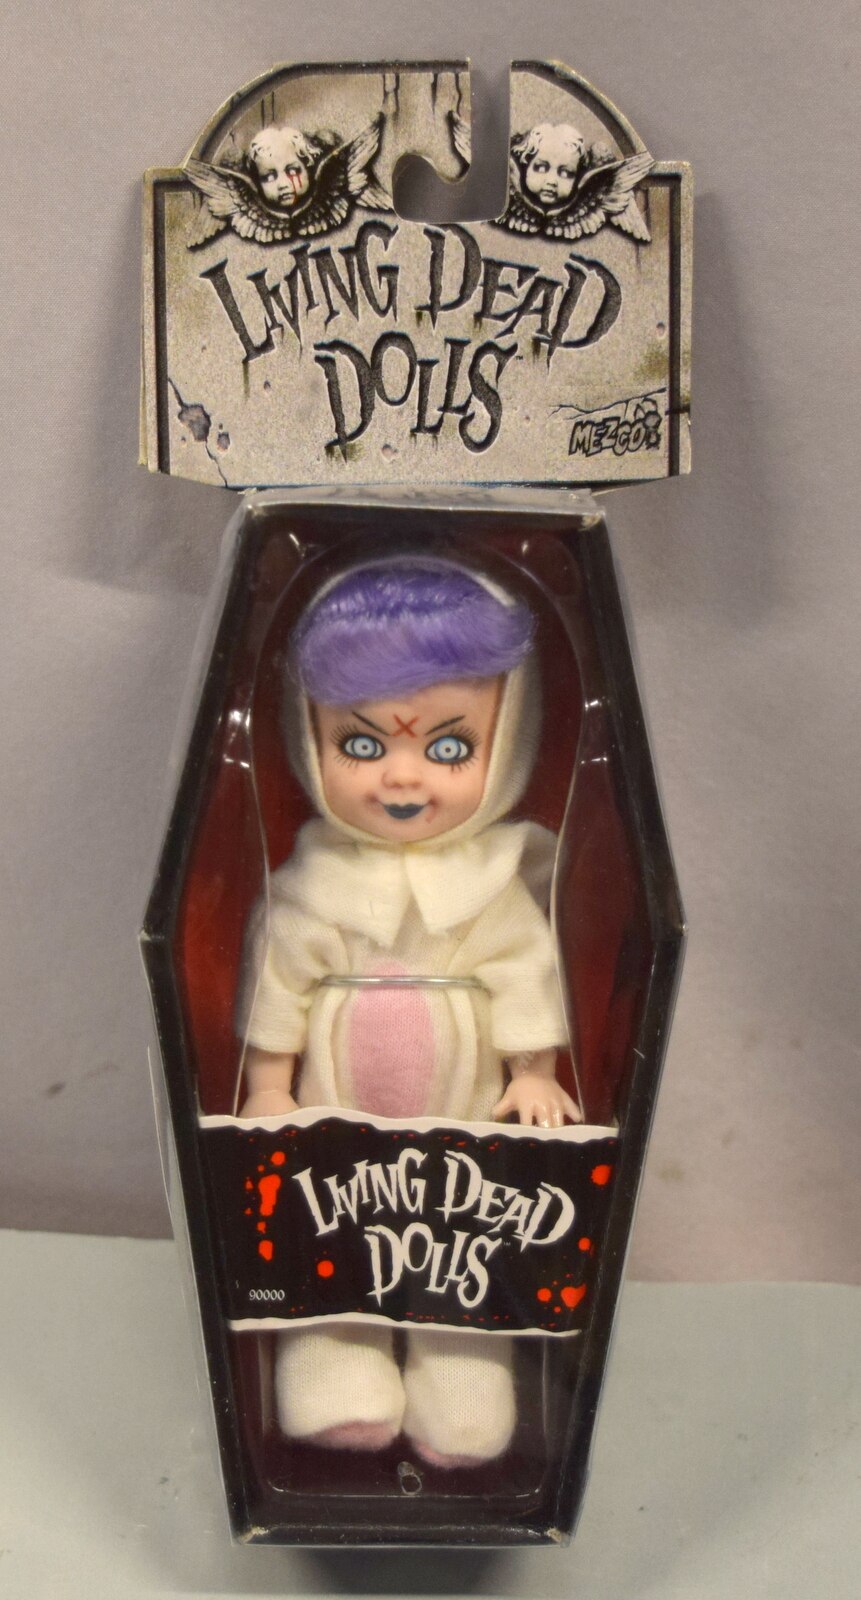 リビングデッドドールズ (Living Dead Dolls)ミニ エグゾシスト - SF ...